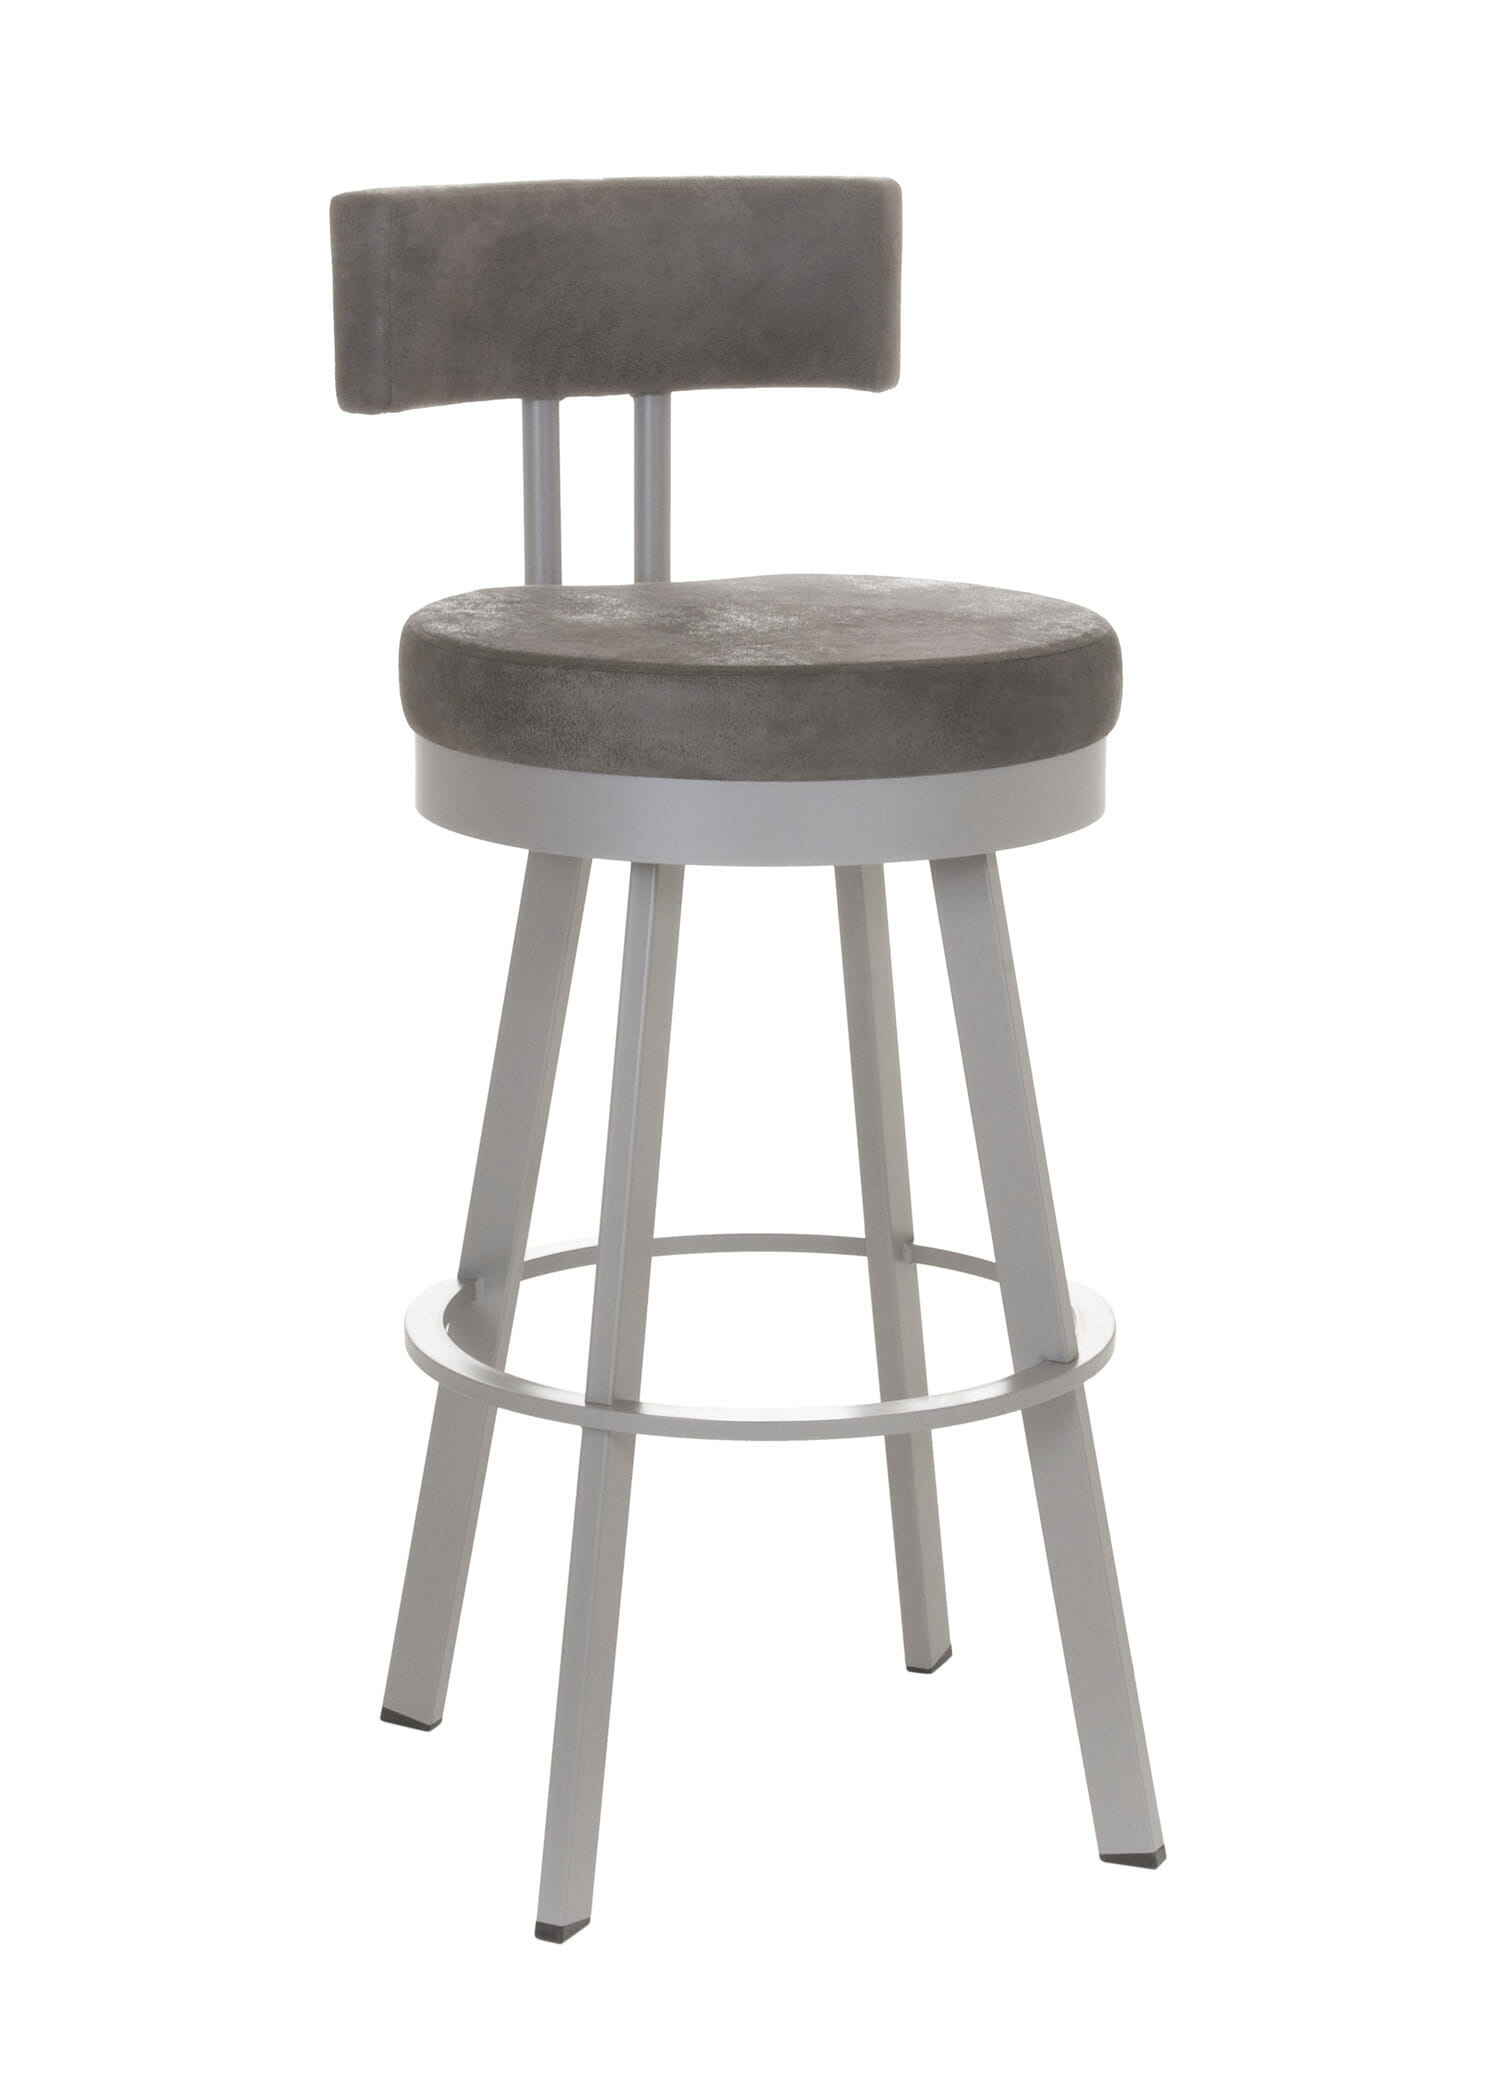 Extra tall swivel bar stools 14